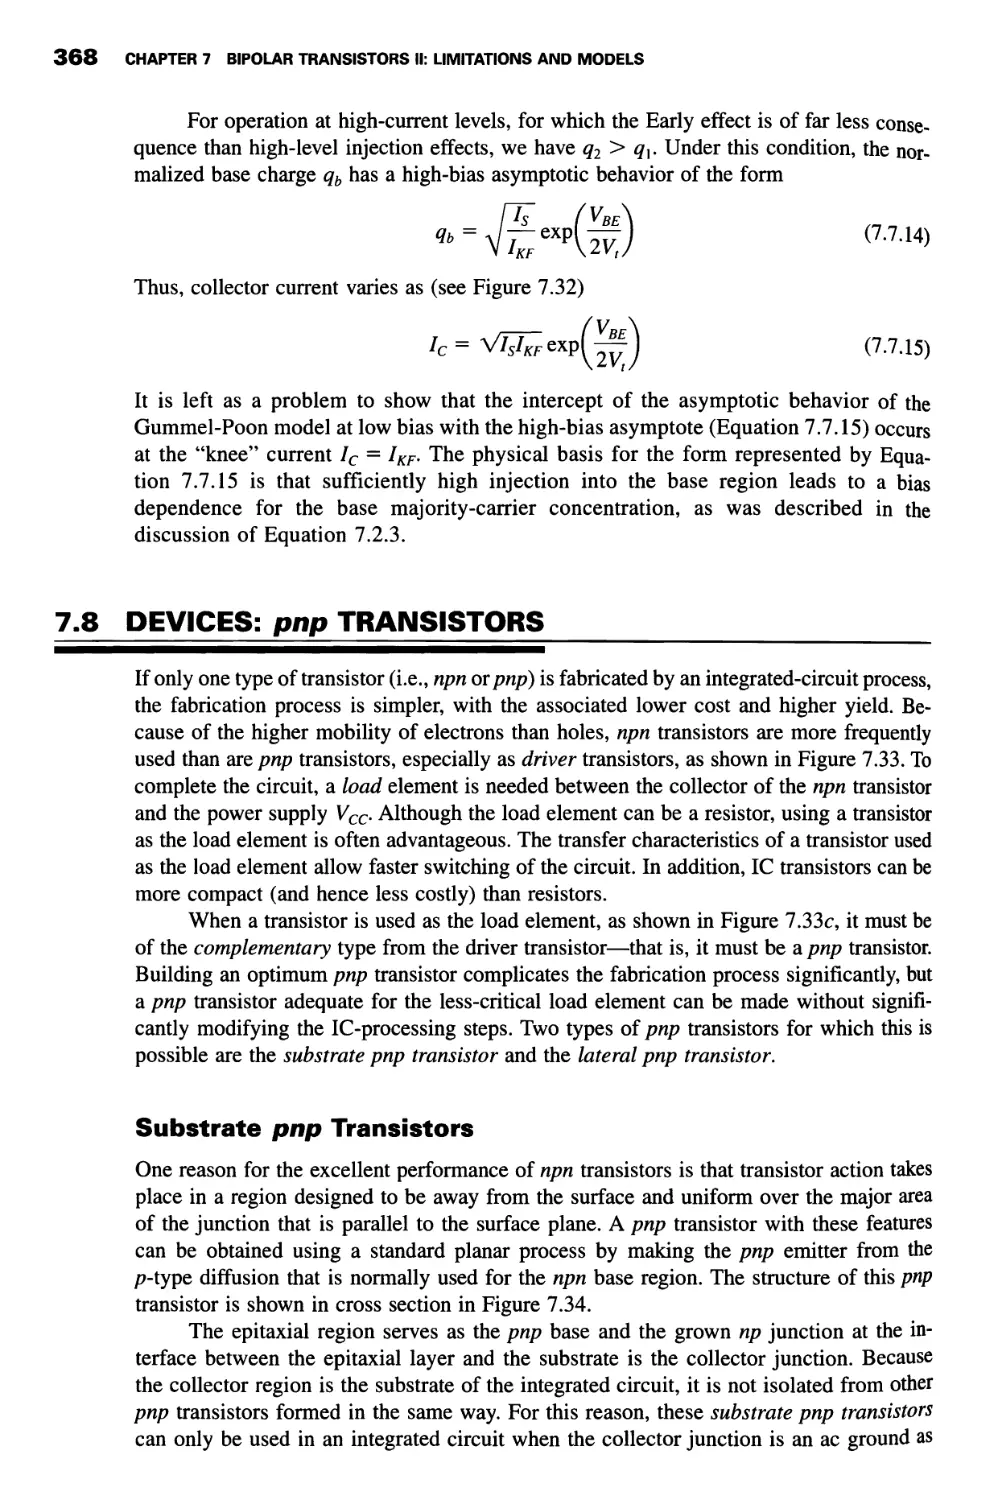 7.8 Devices: pnp Transistors